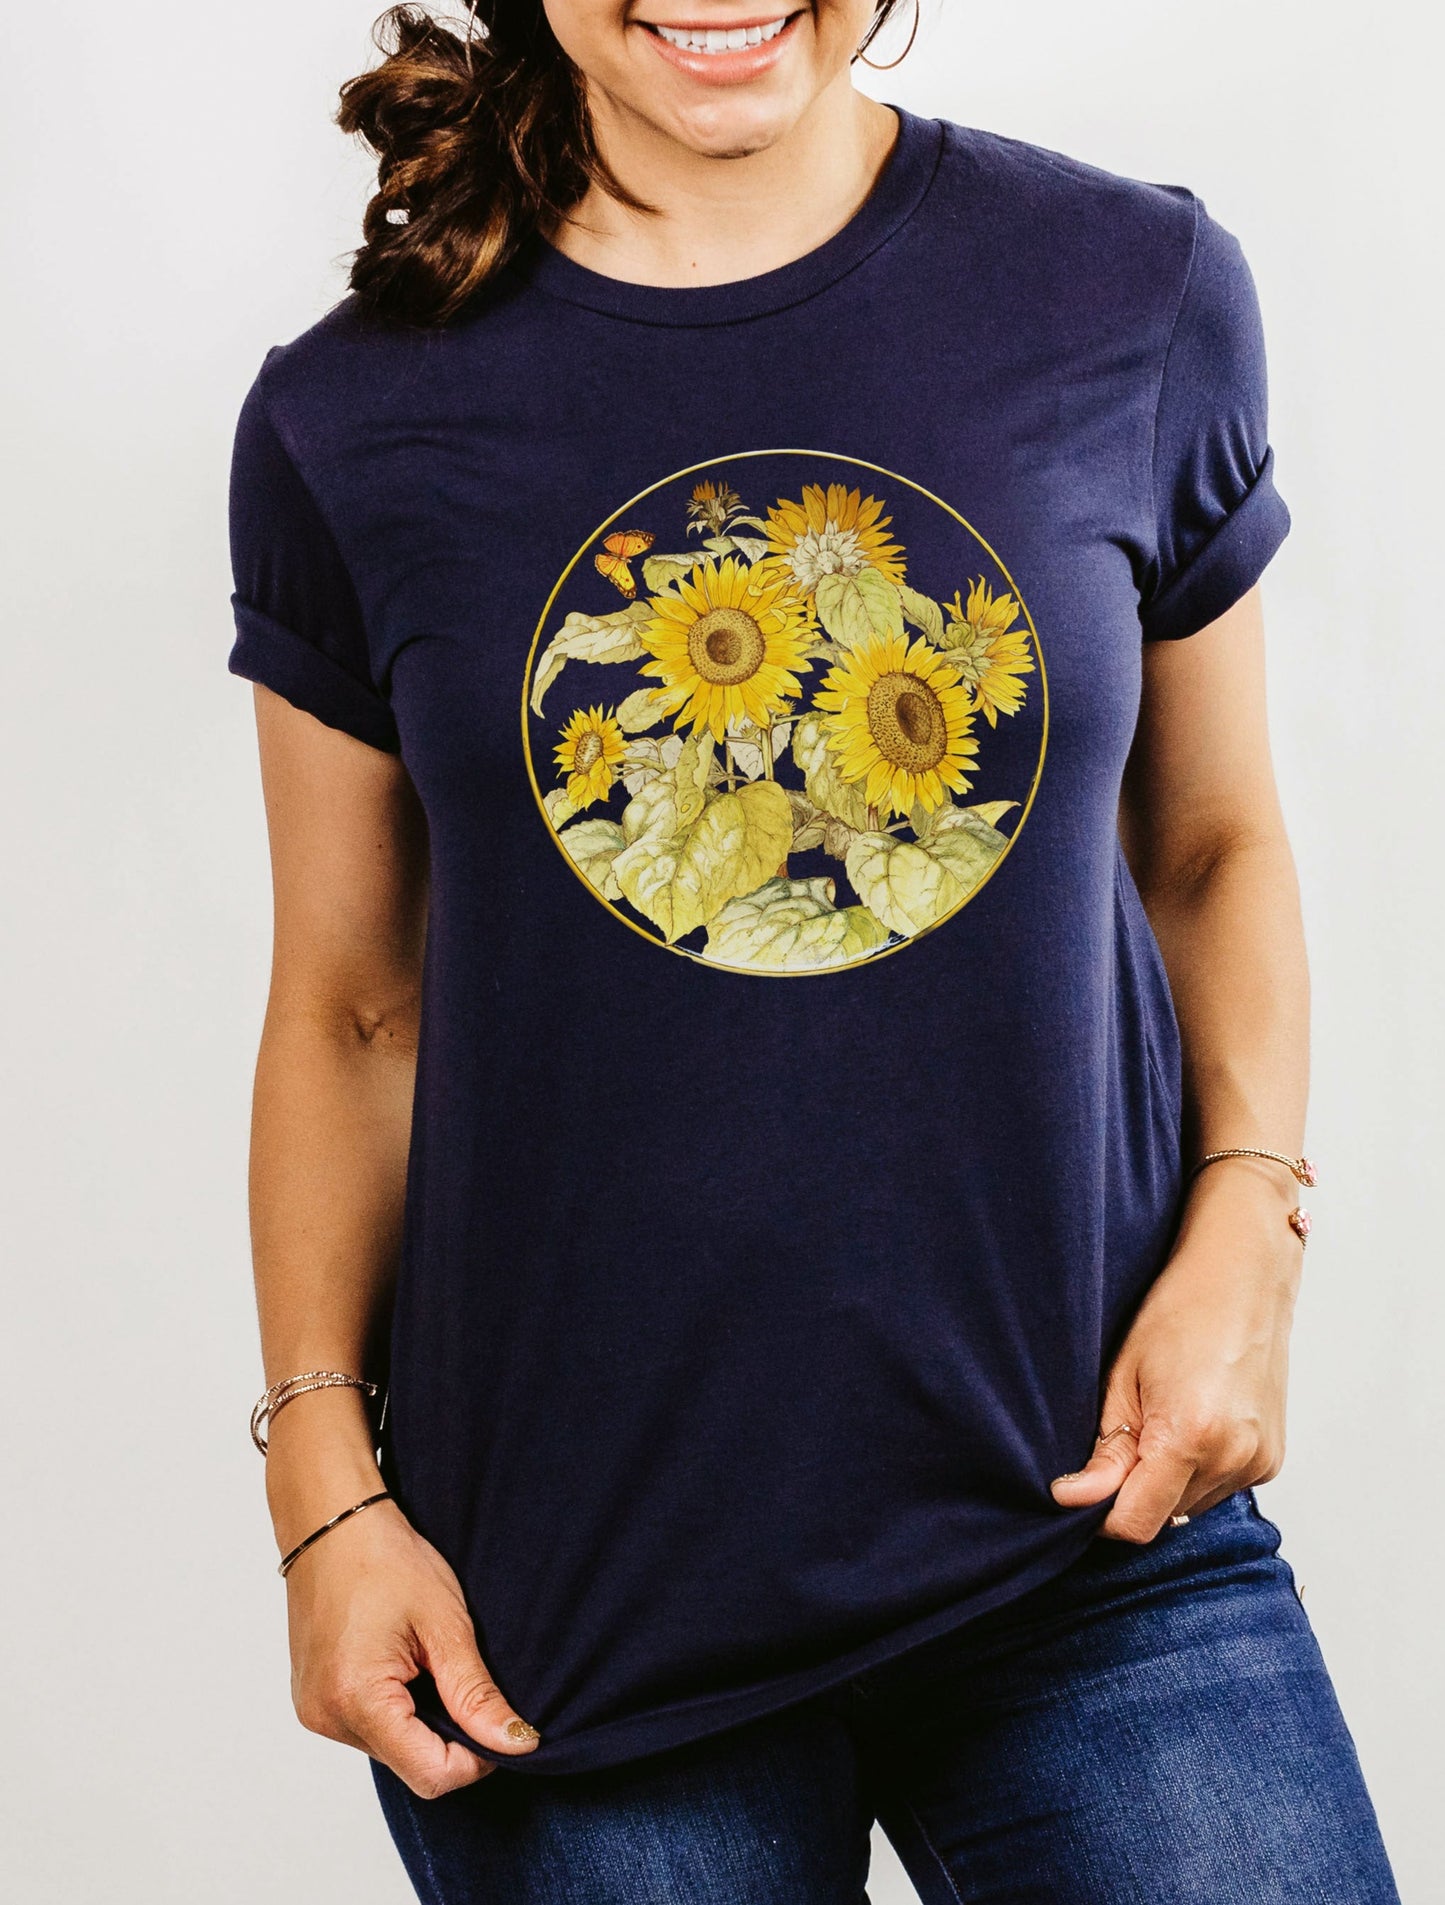 Women's gardening shirt, Butterfly shirt, Flowers and butterflies, Monarch butterfly, nature, butterfly garden